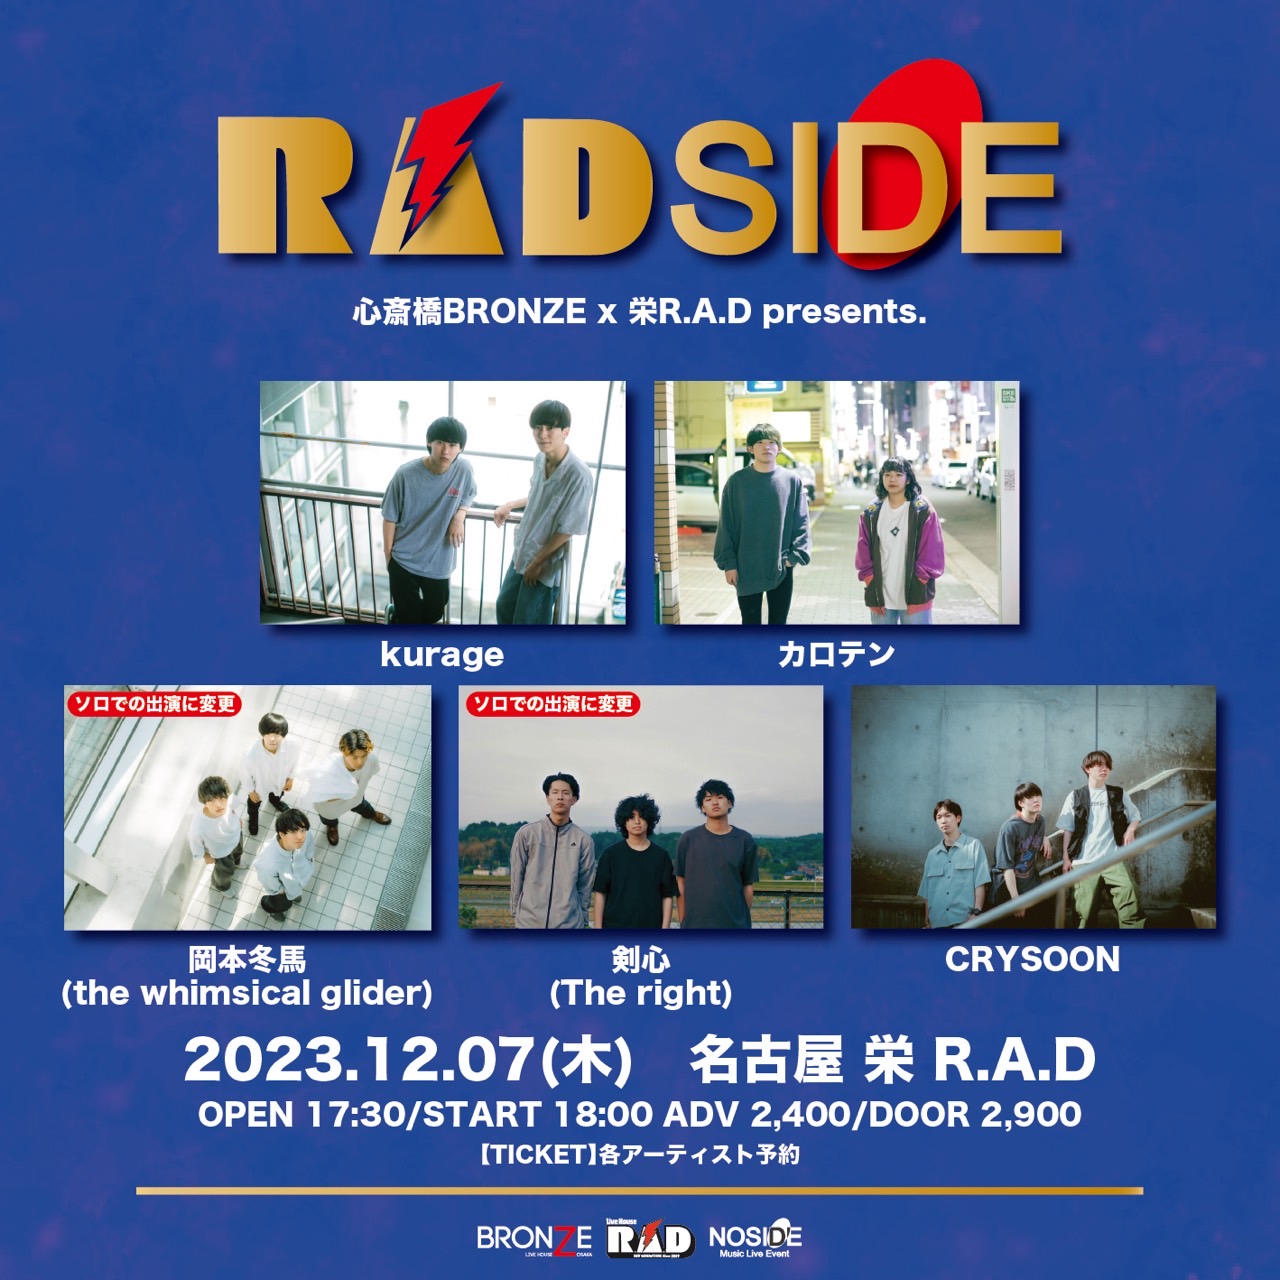 心斎橋BRONZE×栄R.A.D presents. "RADSIDE"